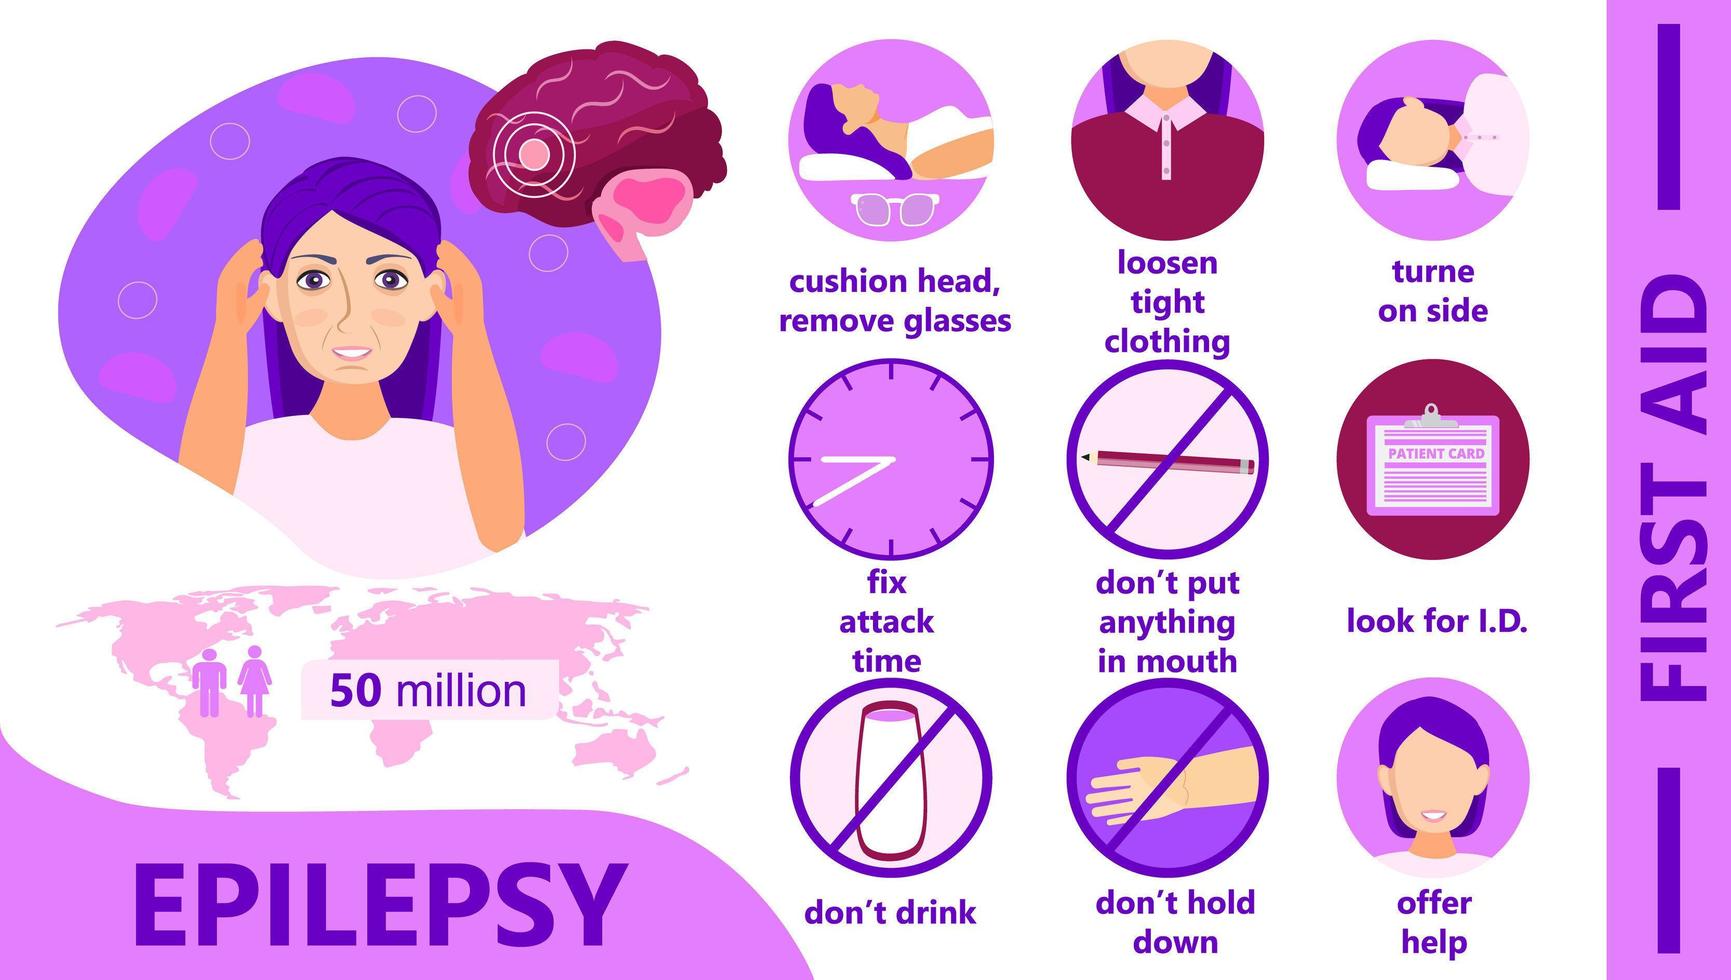 epilepsi infographic. medvetenhetsmånaden anordnas i november. första hjälpen vid epilepsianfall. vektor